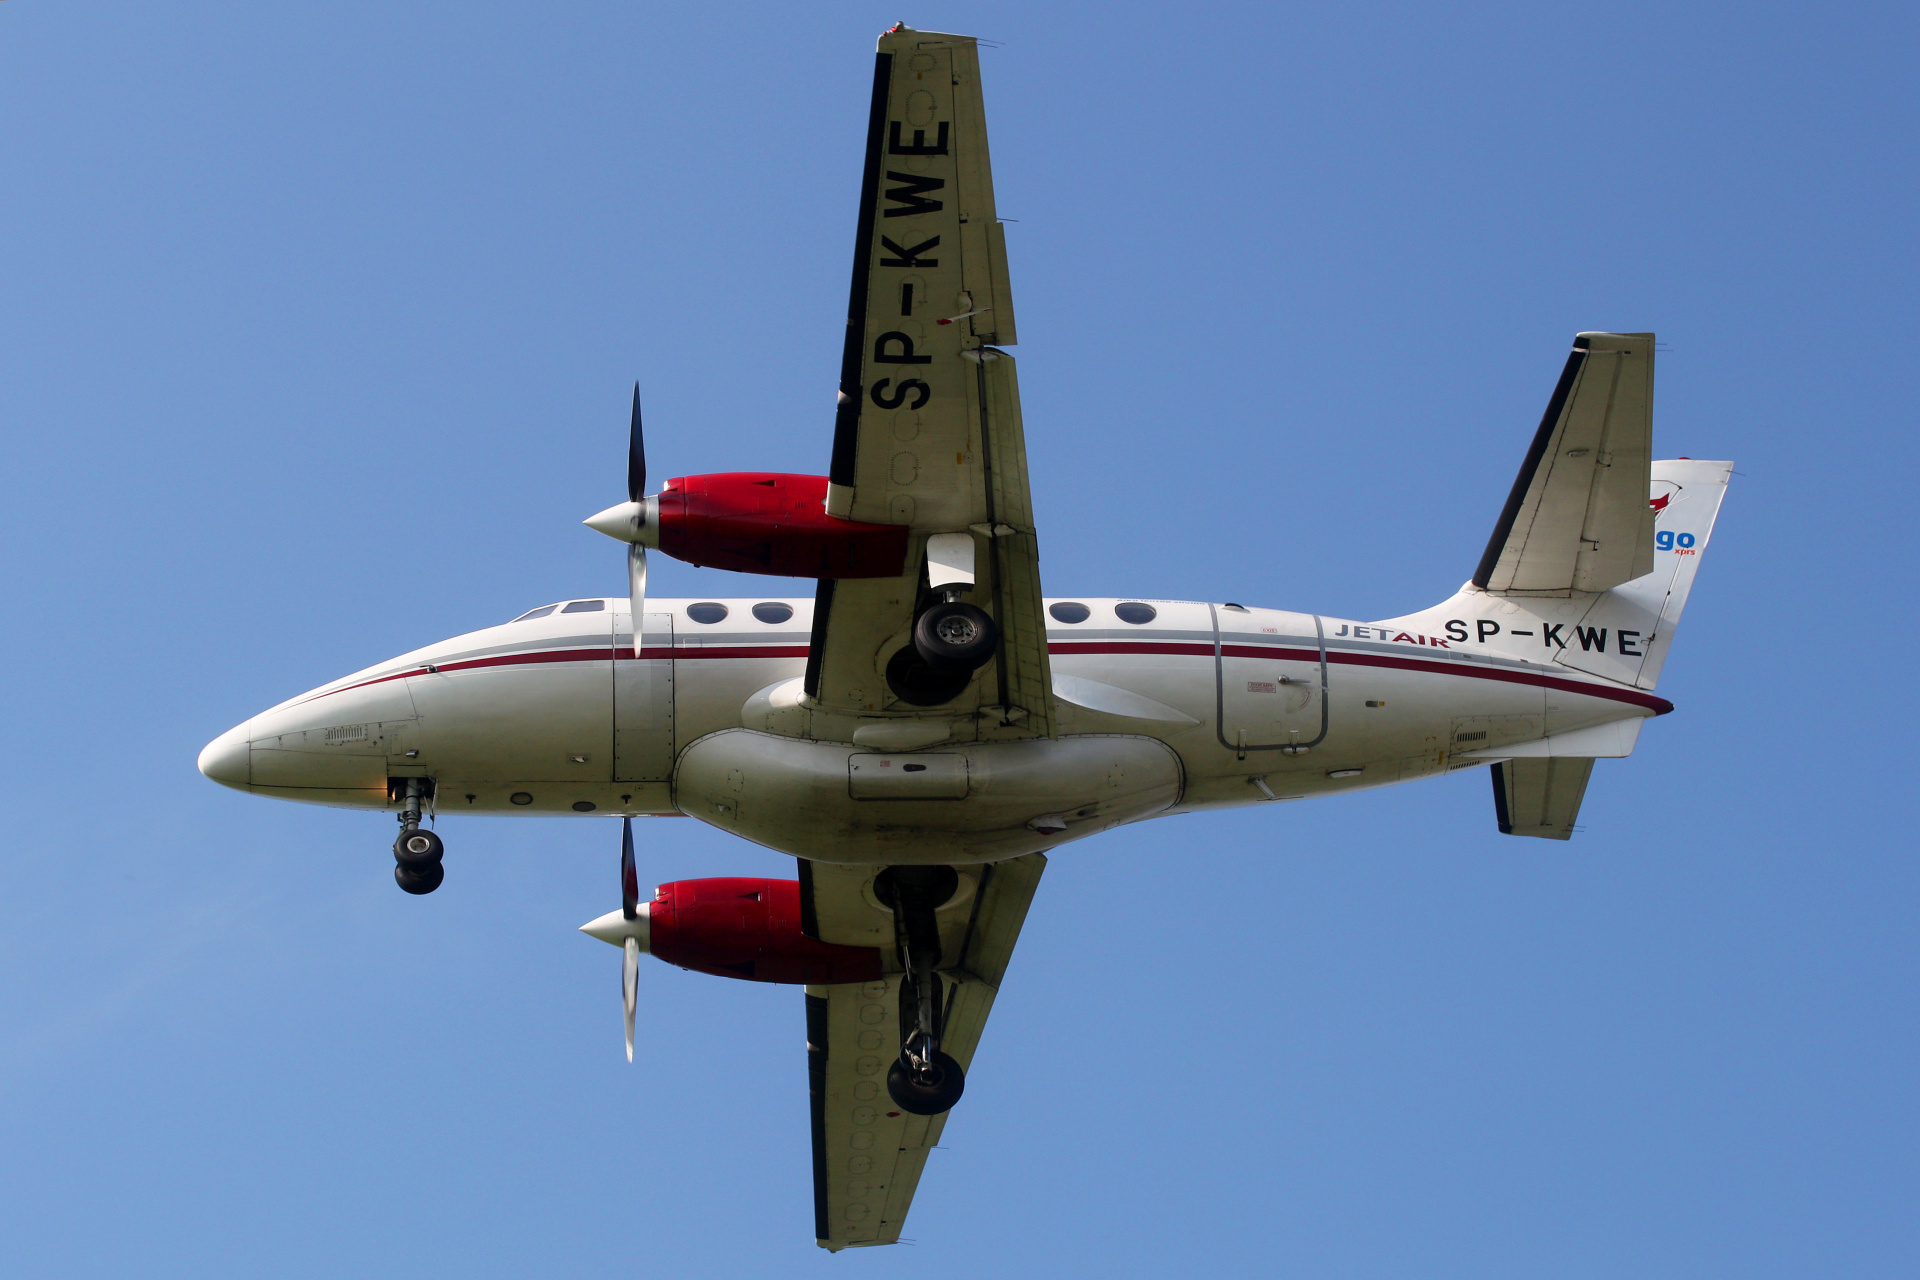 SP-KWE, Jet Air (Wingo) (Aircraft » EPWA Spotting » BAe Jetstream 32)